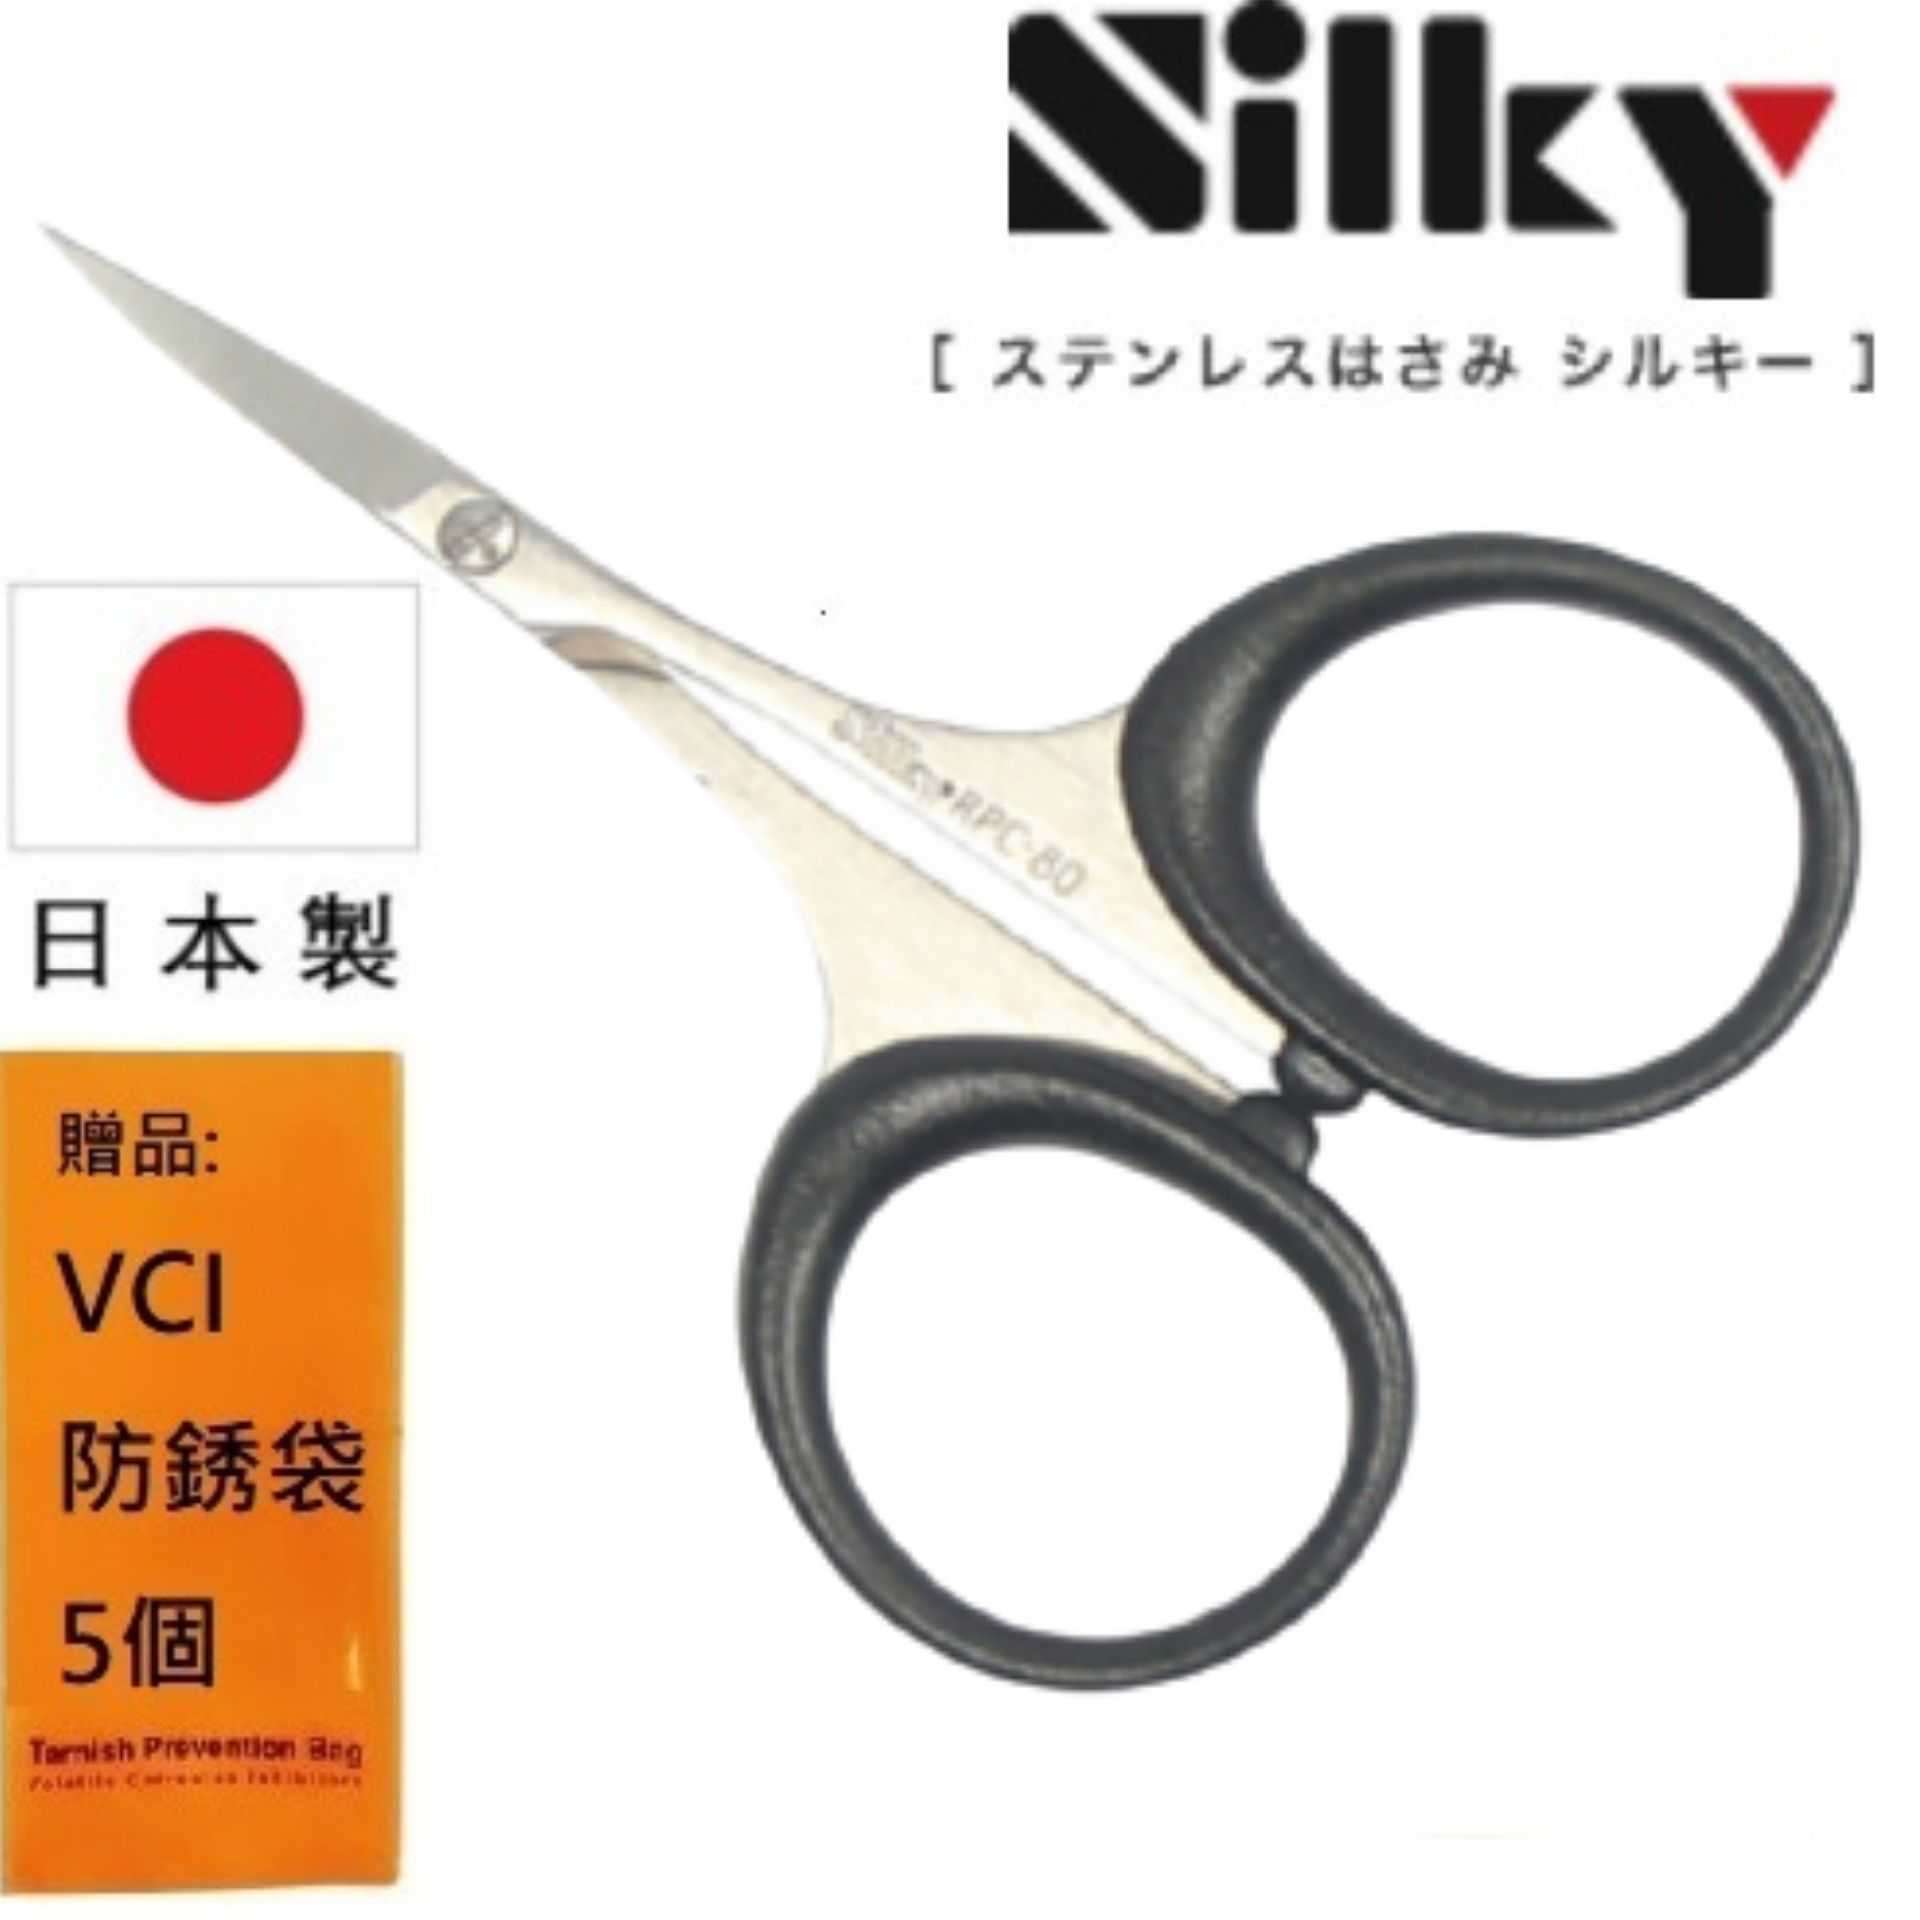 【日本SILKY】迷你極細手工藝剪刀-80mm 名望遠播、職人的刀具